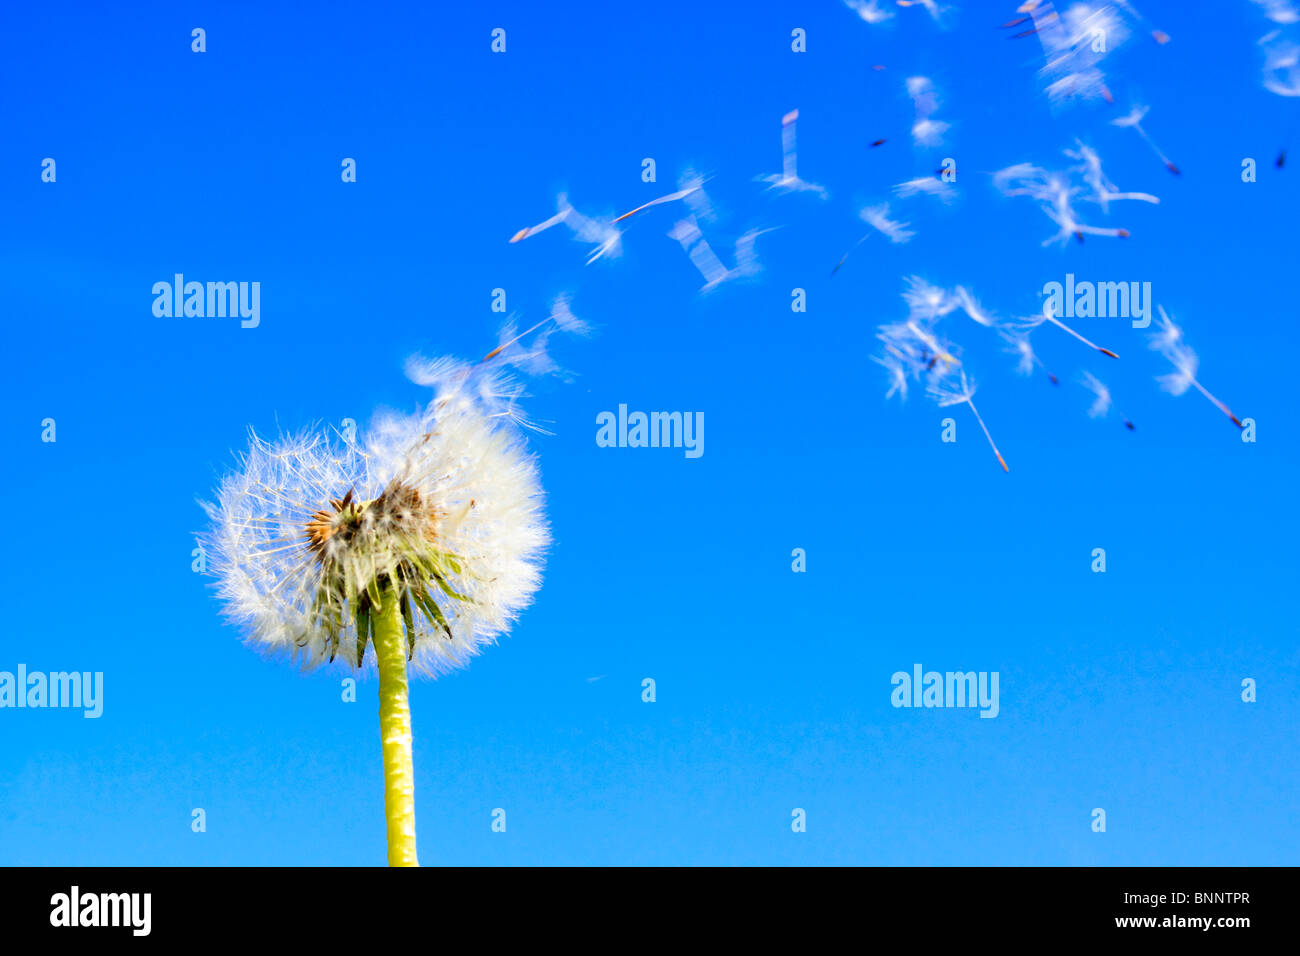 Detalle flora reproducción facilidad de vuelo sky air proyecto jaramago planta macro puff puffing soplando semillas semillas esperma esperma Foto de stock